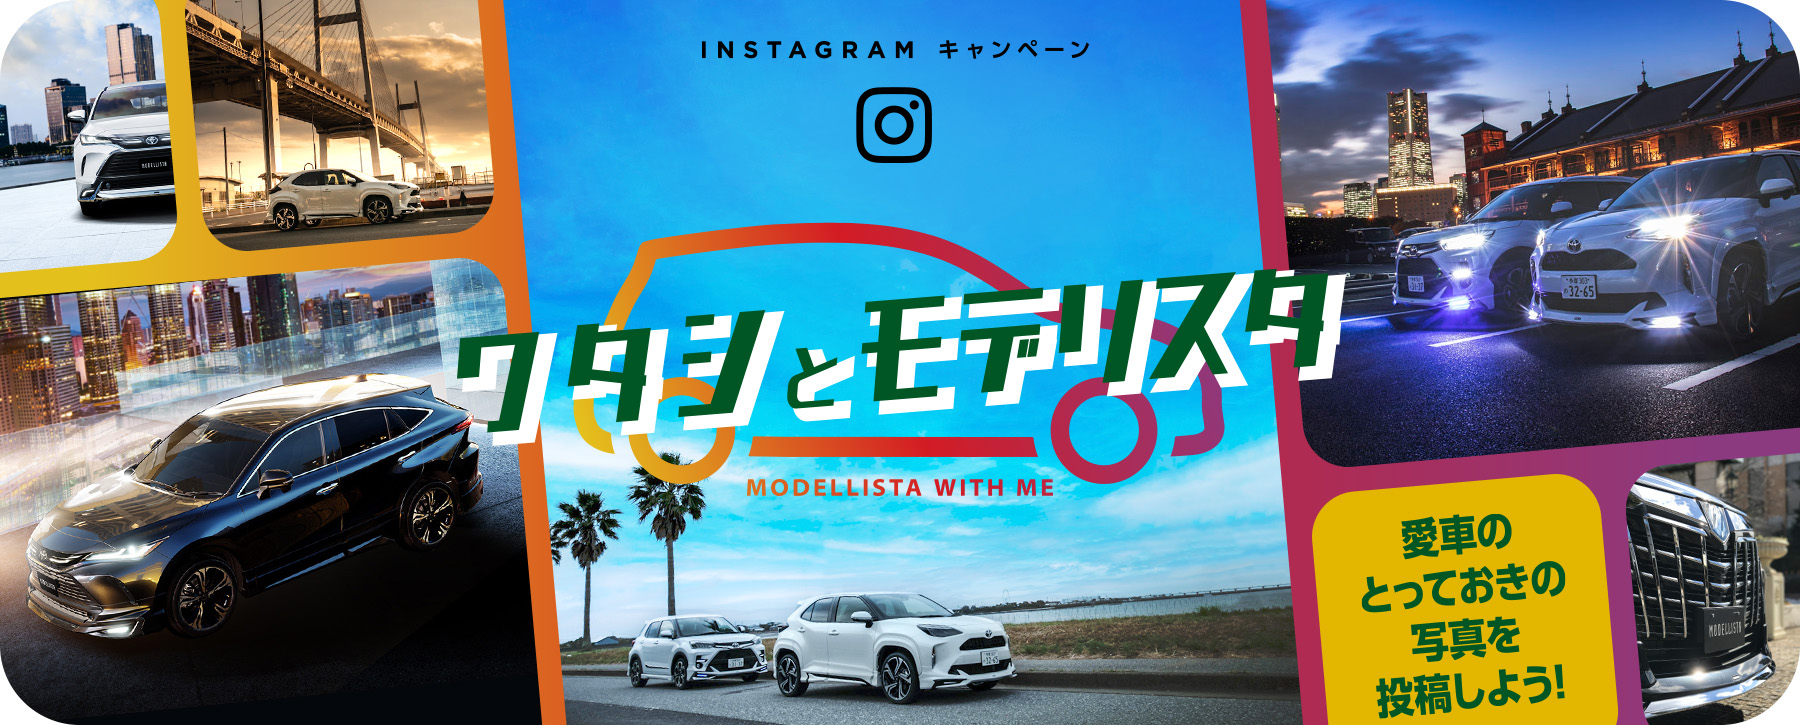 Instagramキャンペーン ワタシとモデリスタ 愛車のとっておきの写真を投稿しよう!